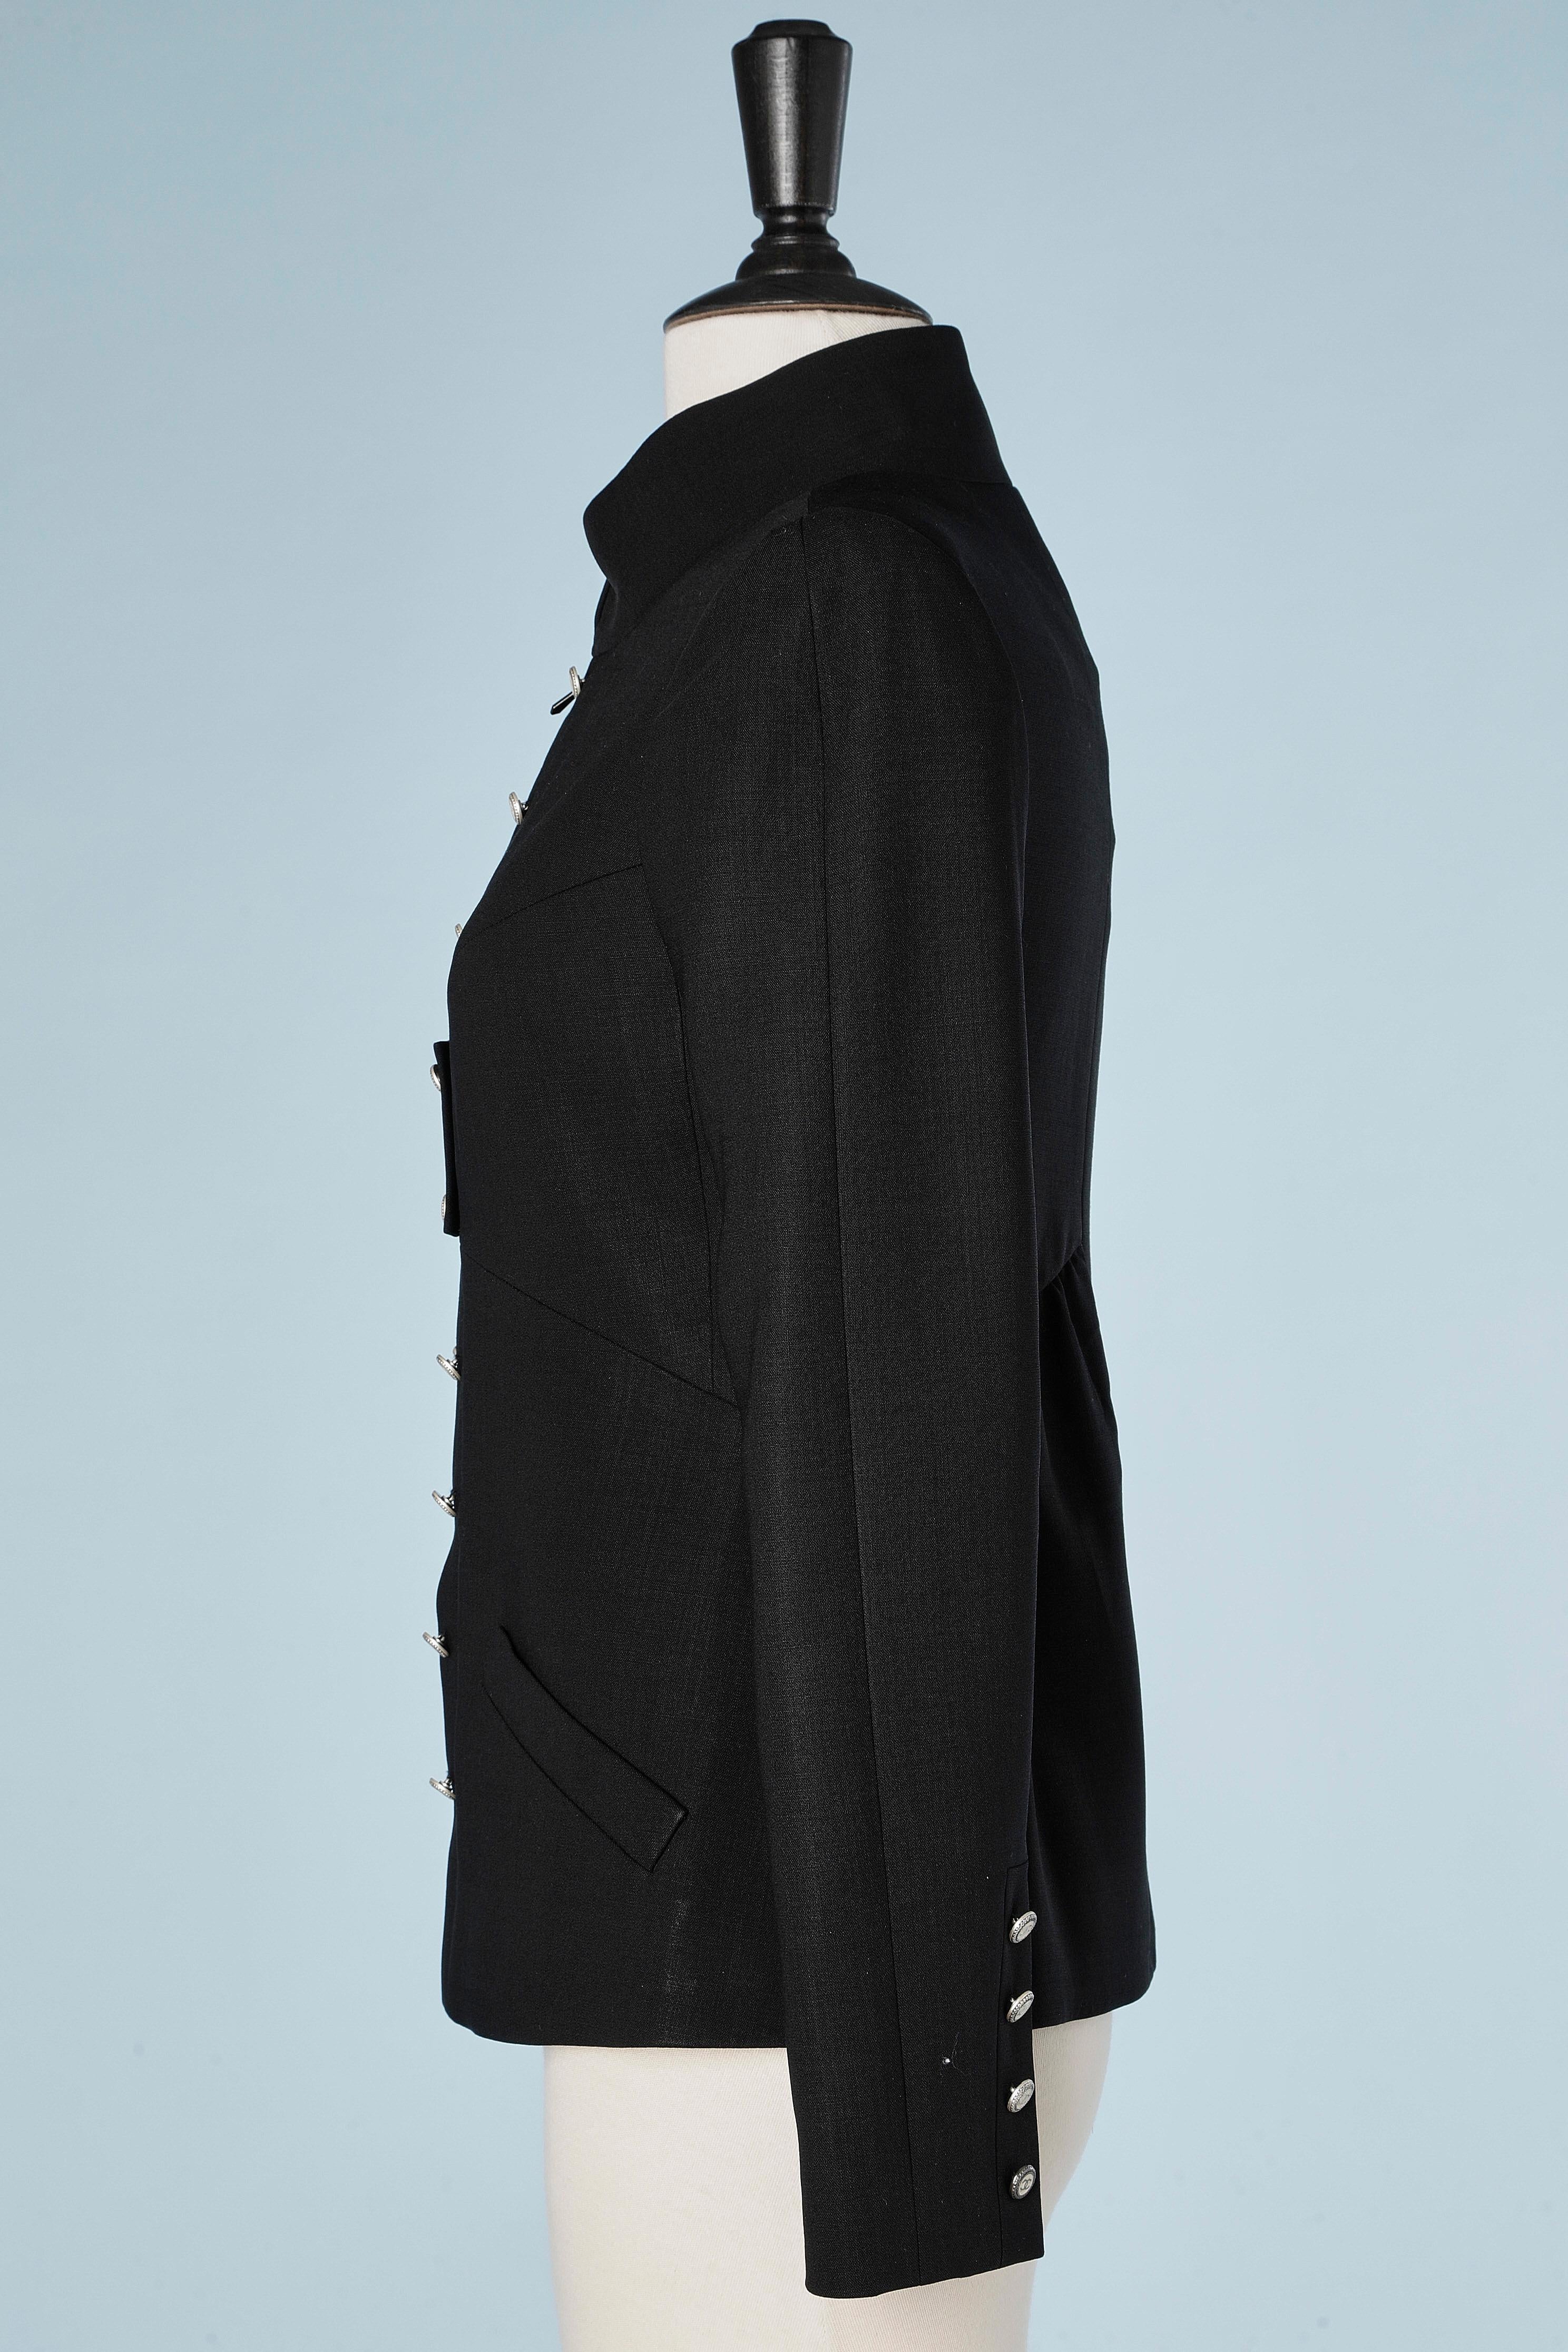 chanel style black jacket